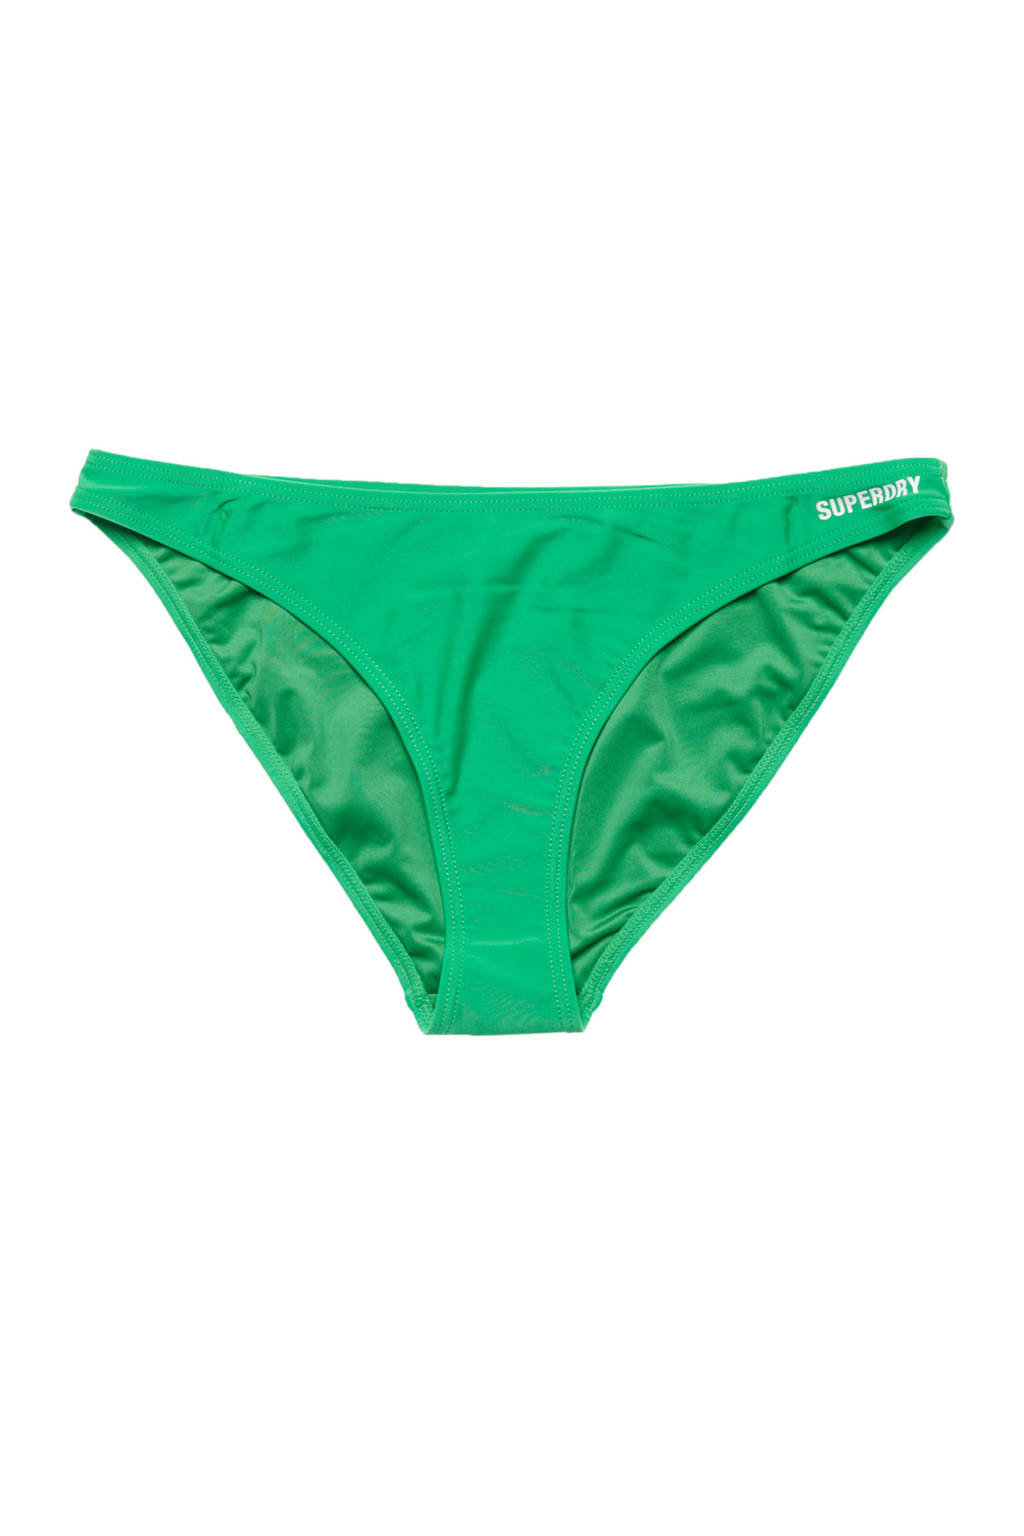 Superdry bikinibroekje groen